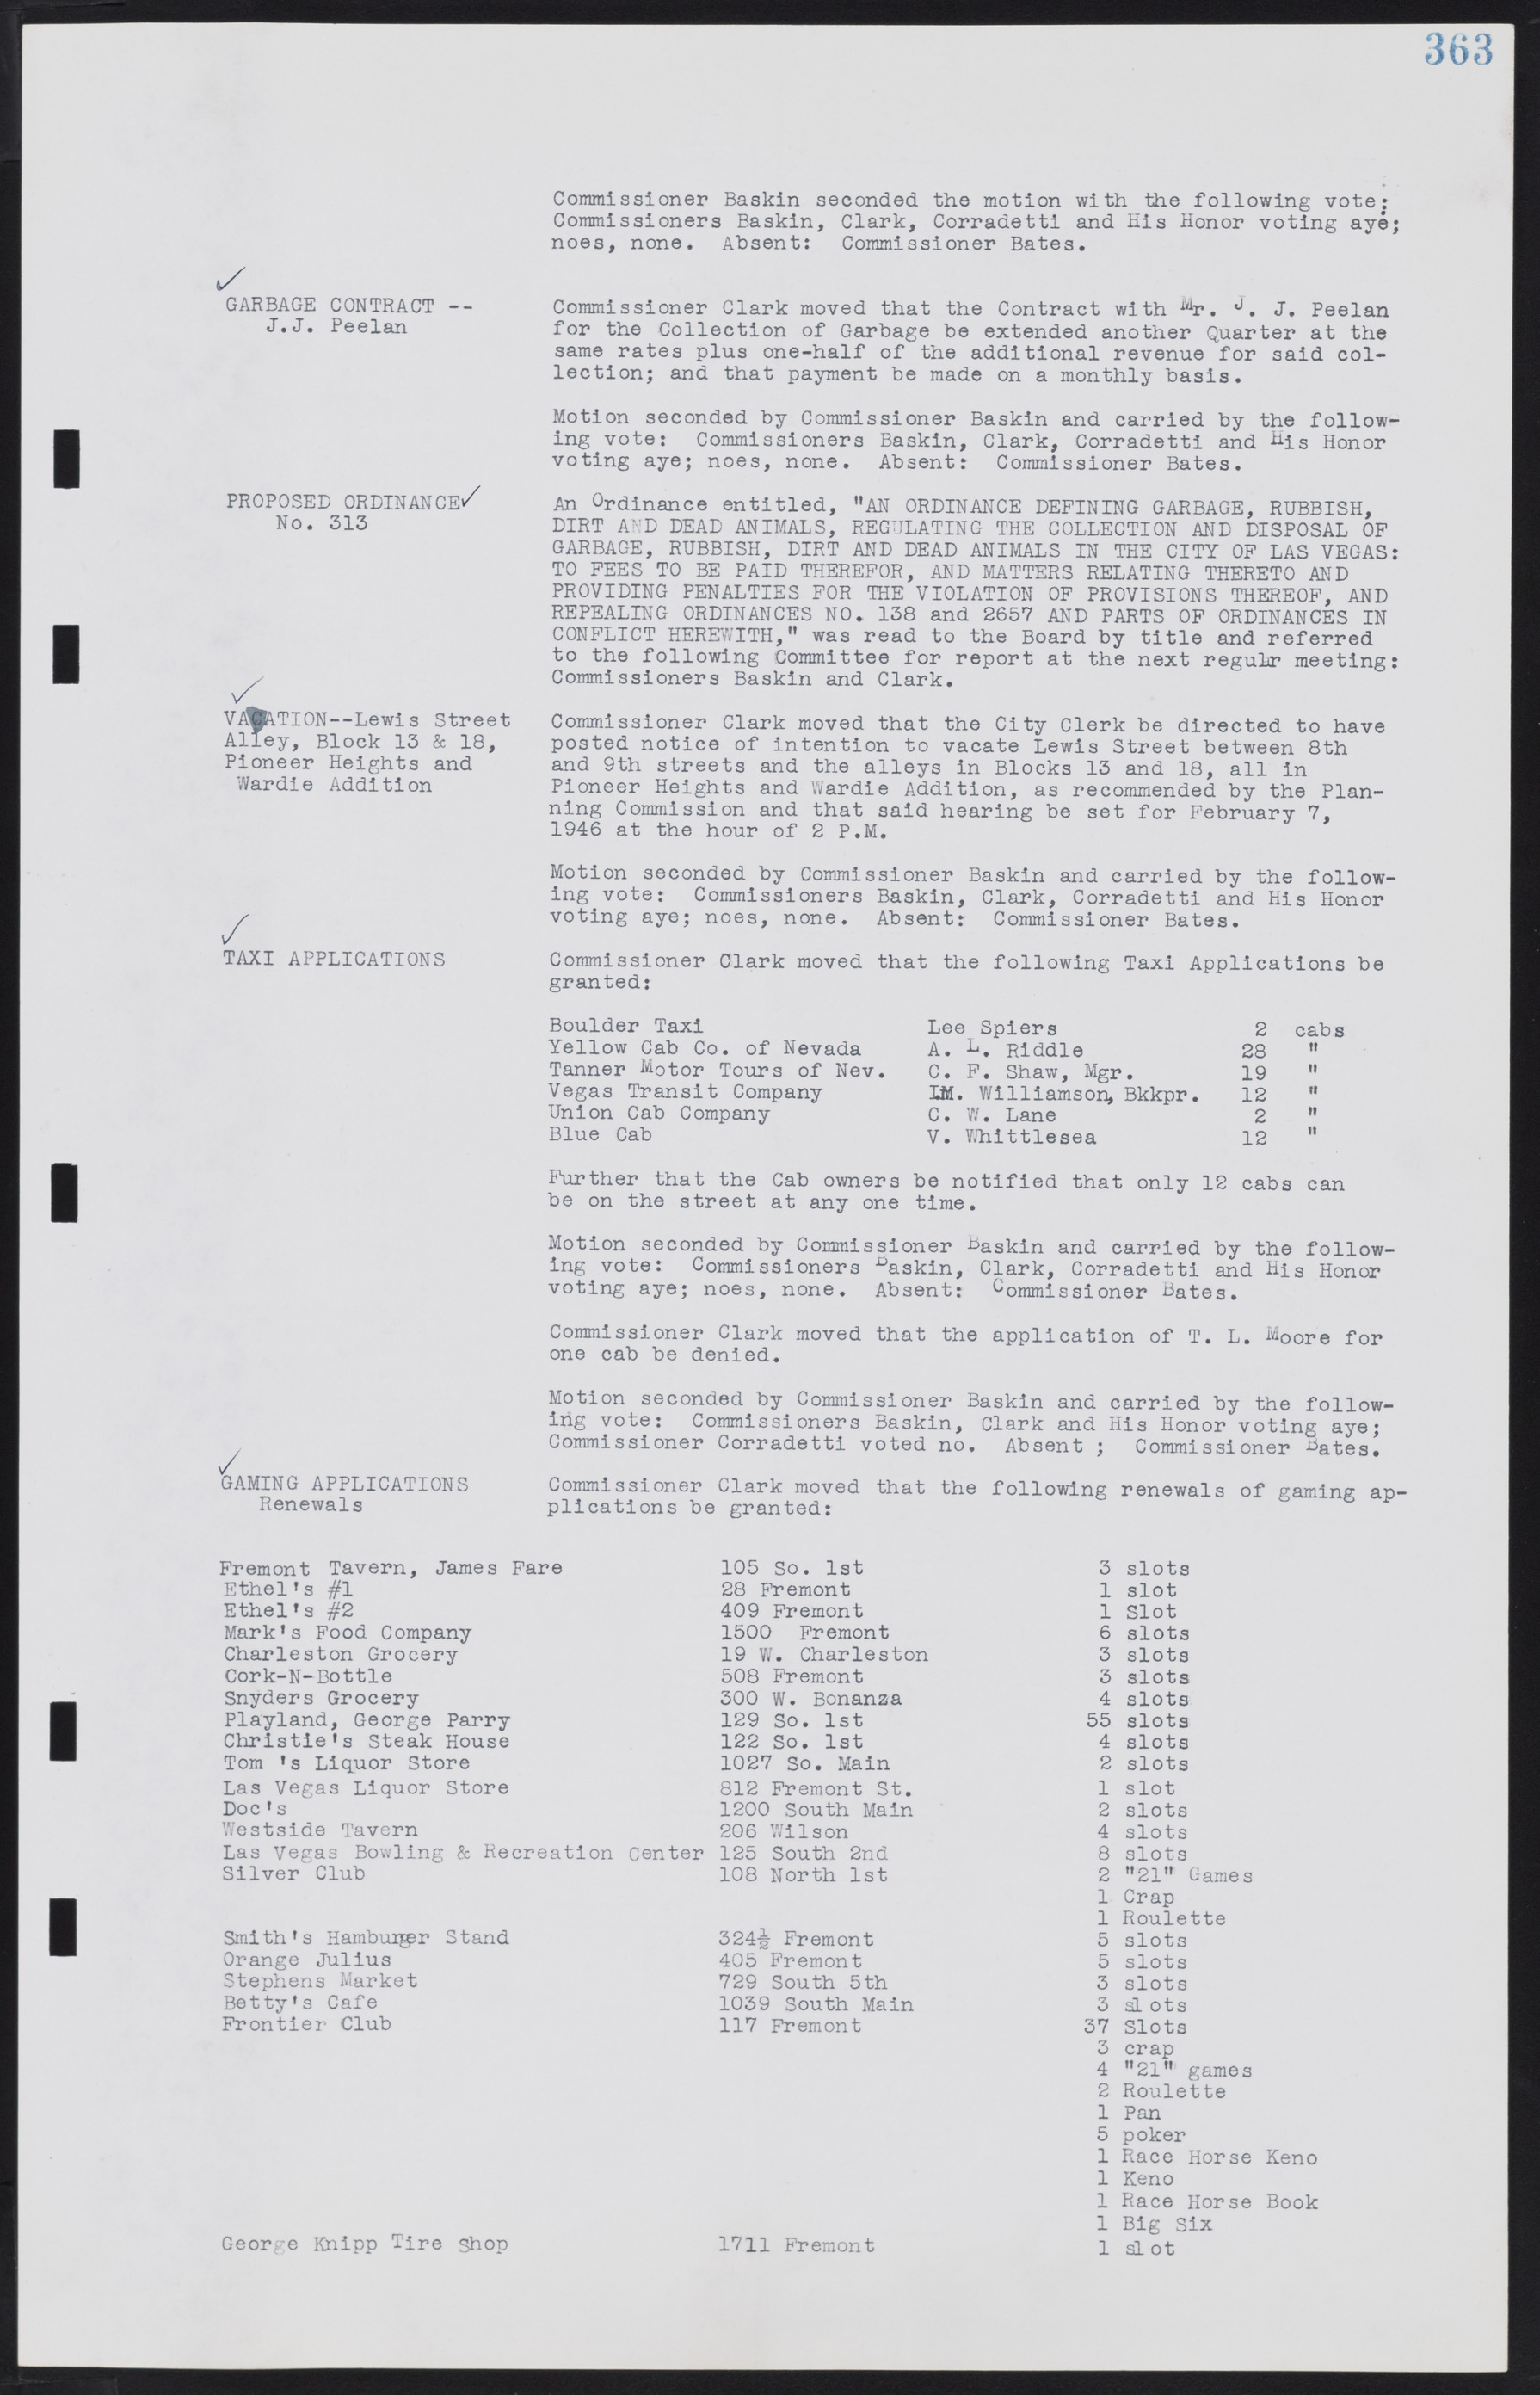 Las Vegas City Commission Minutes, August 11, 1942 to December 30, 1946, lvc000005-388